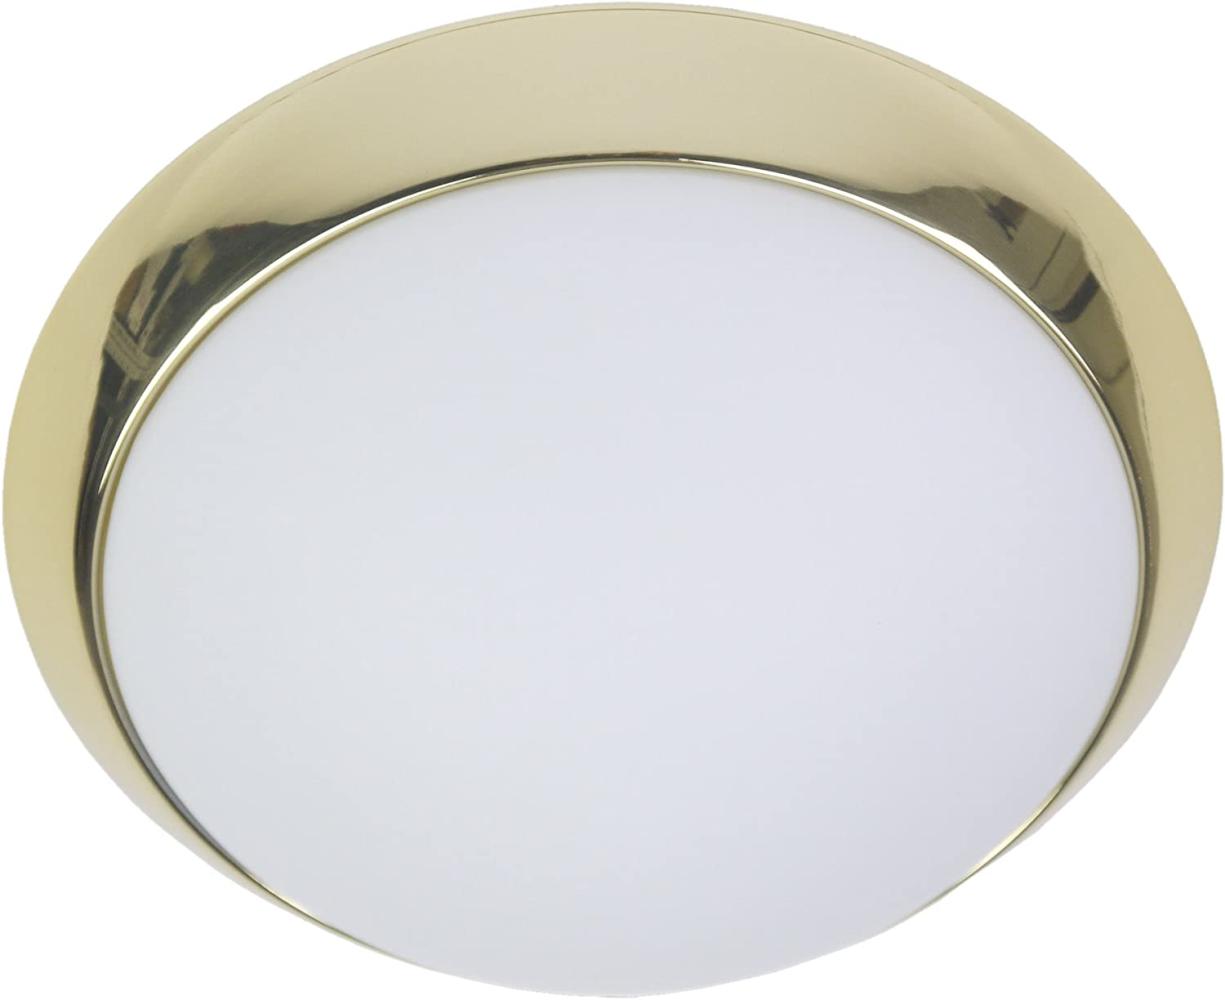 LED-Deckenleuchte rund, Opalglas matt, Dekorring Messing poliert, Ø 40cm Bild 1